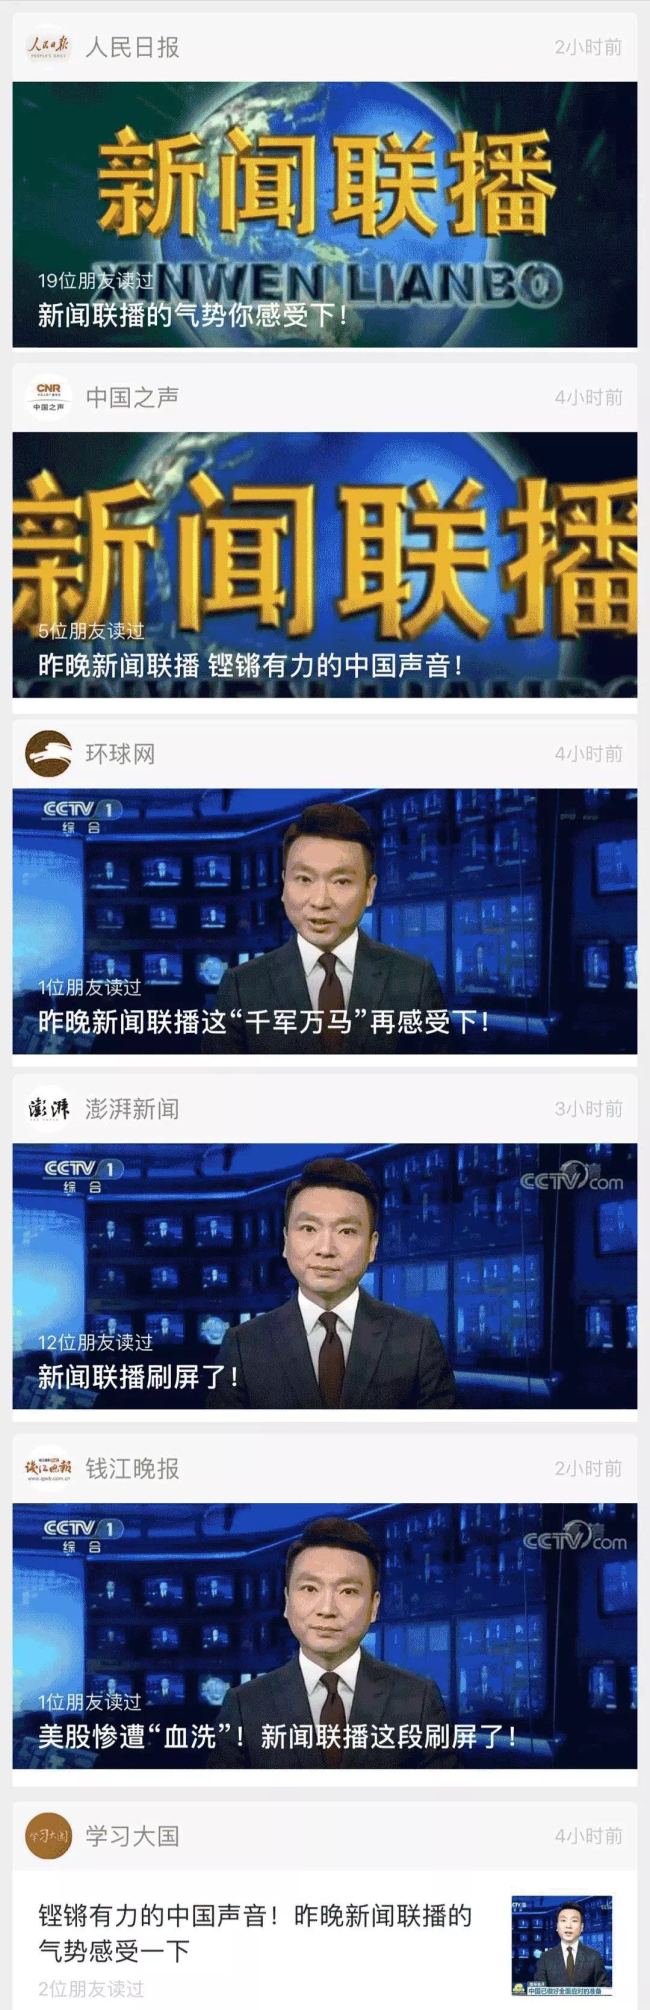 CCTV News mostra confiança e passo firme do avanço da China